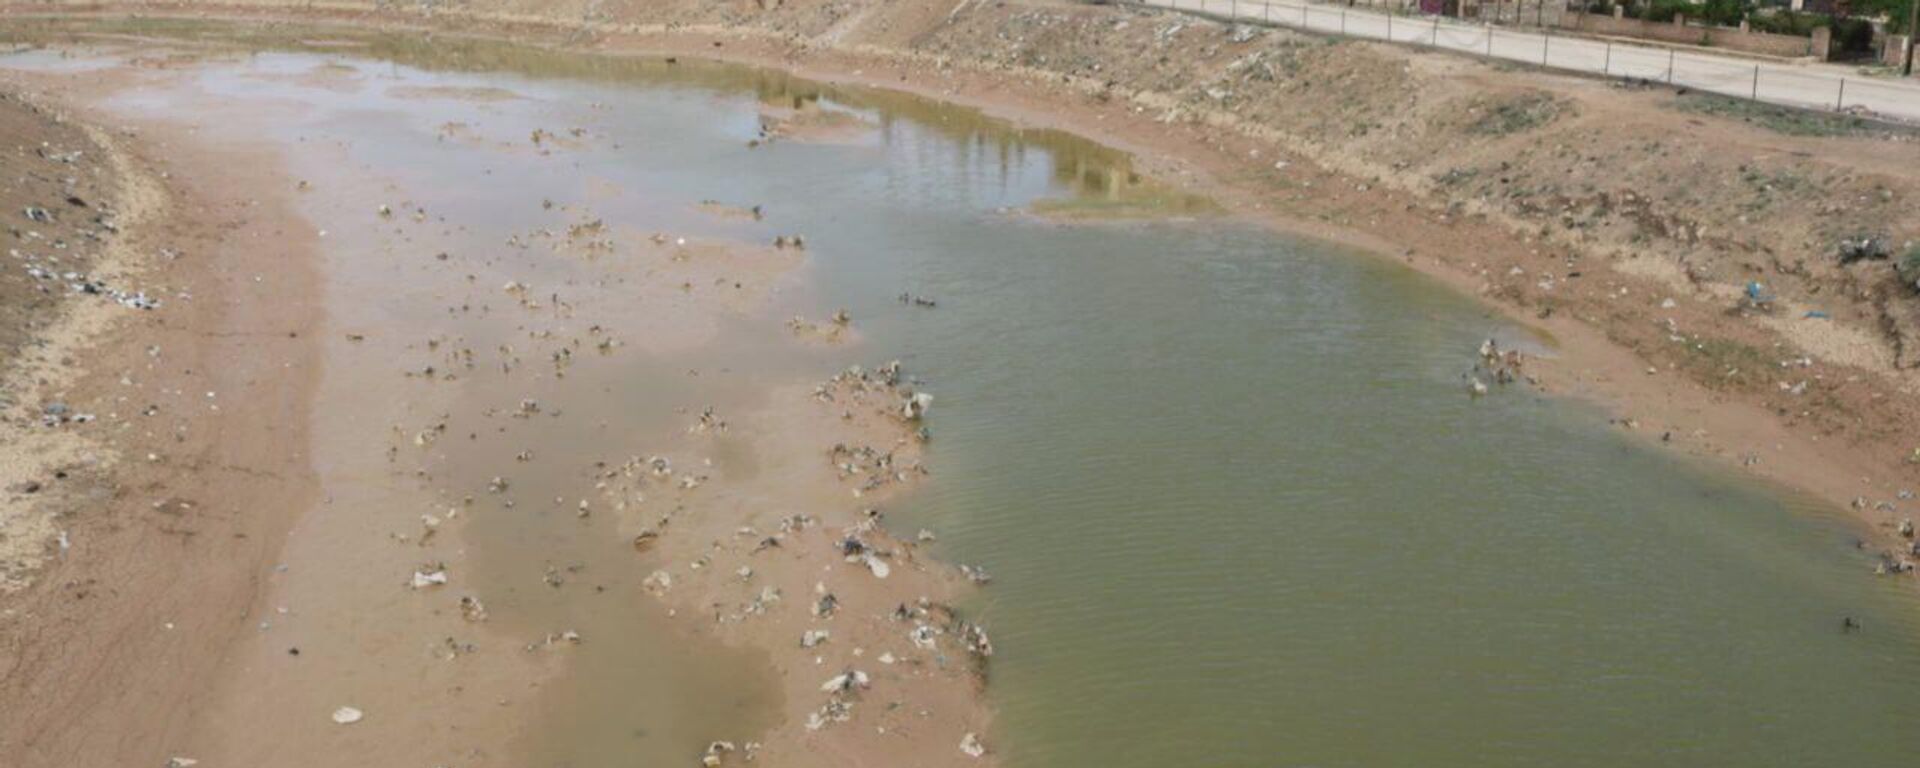 انخفاض تاريخي في منسوب نهر الفرات ينذر بكارثة إنسانية وبيئية خطيرة شرقي سوريا - سبوتنيك عربي, 1920, 24.03.2023